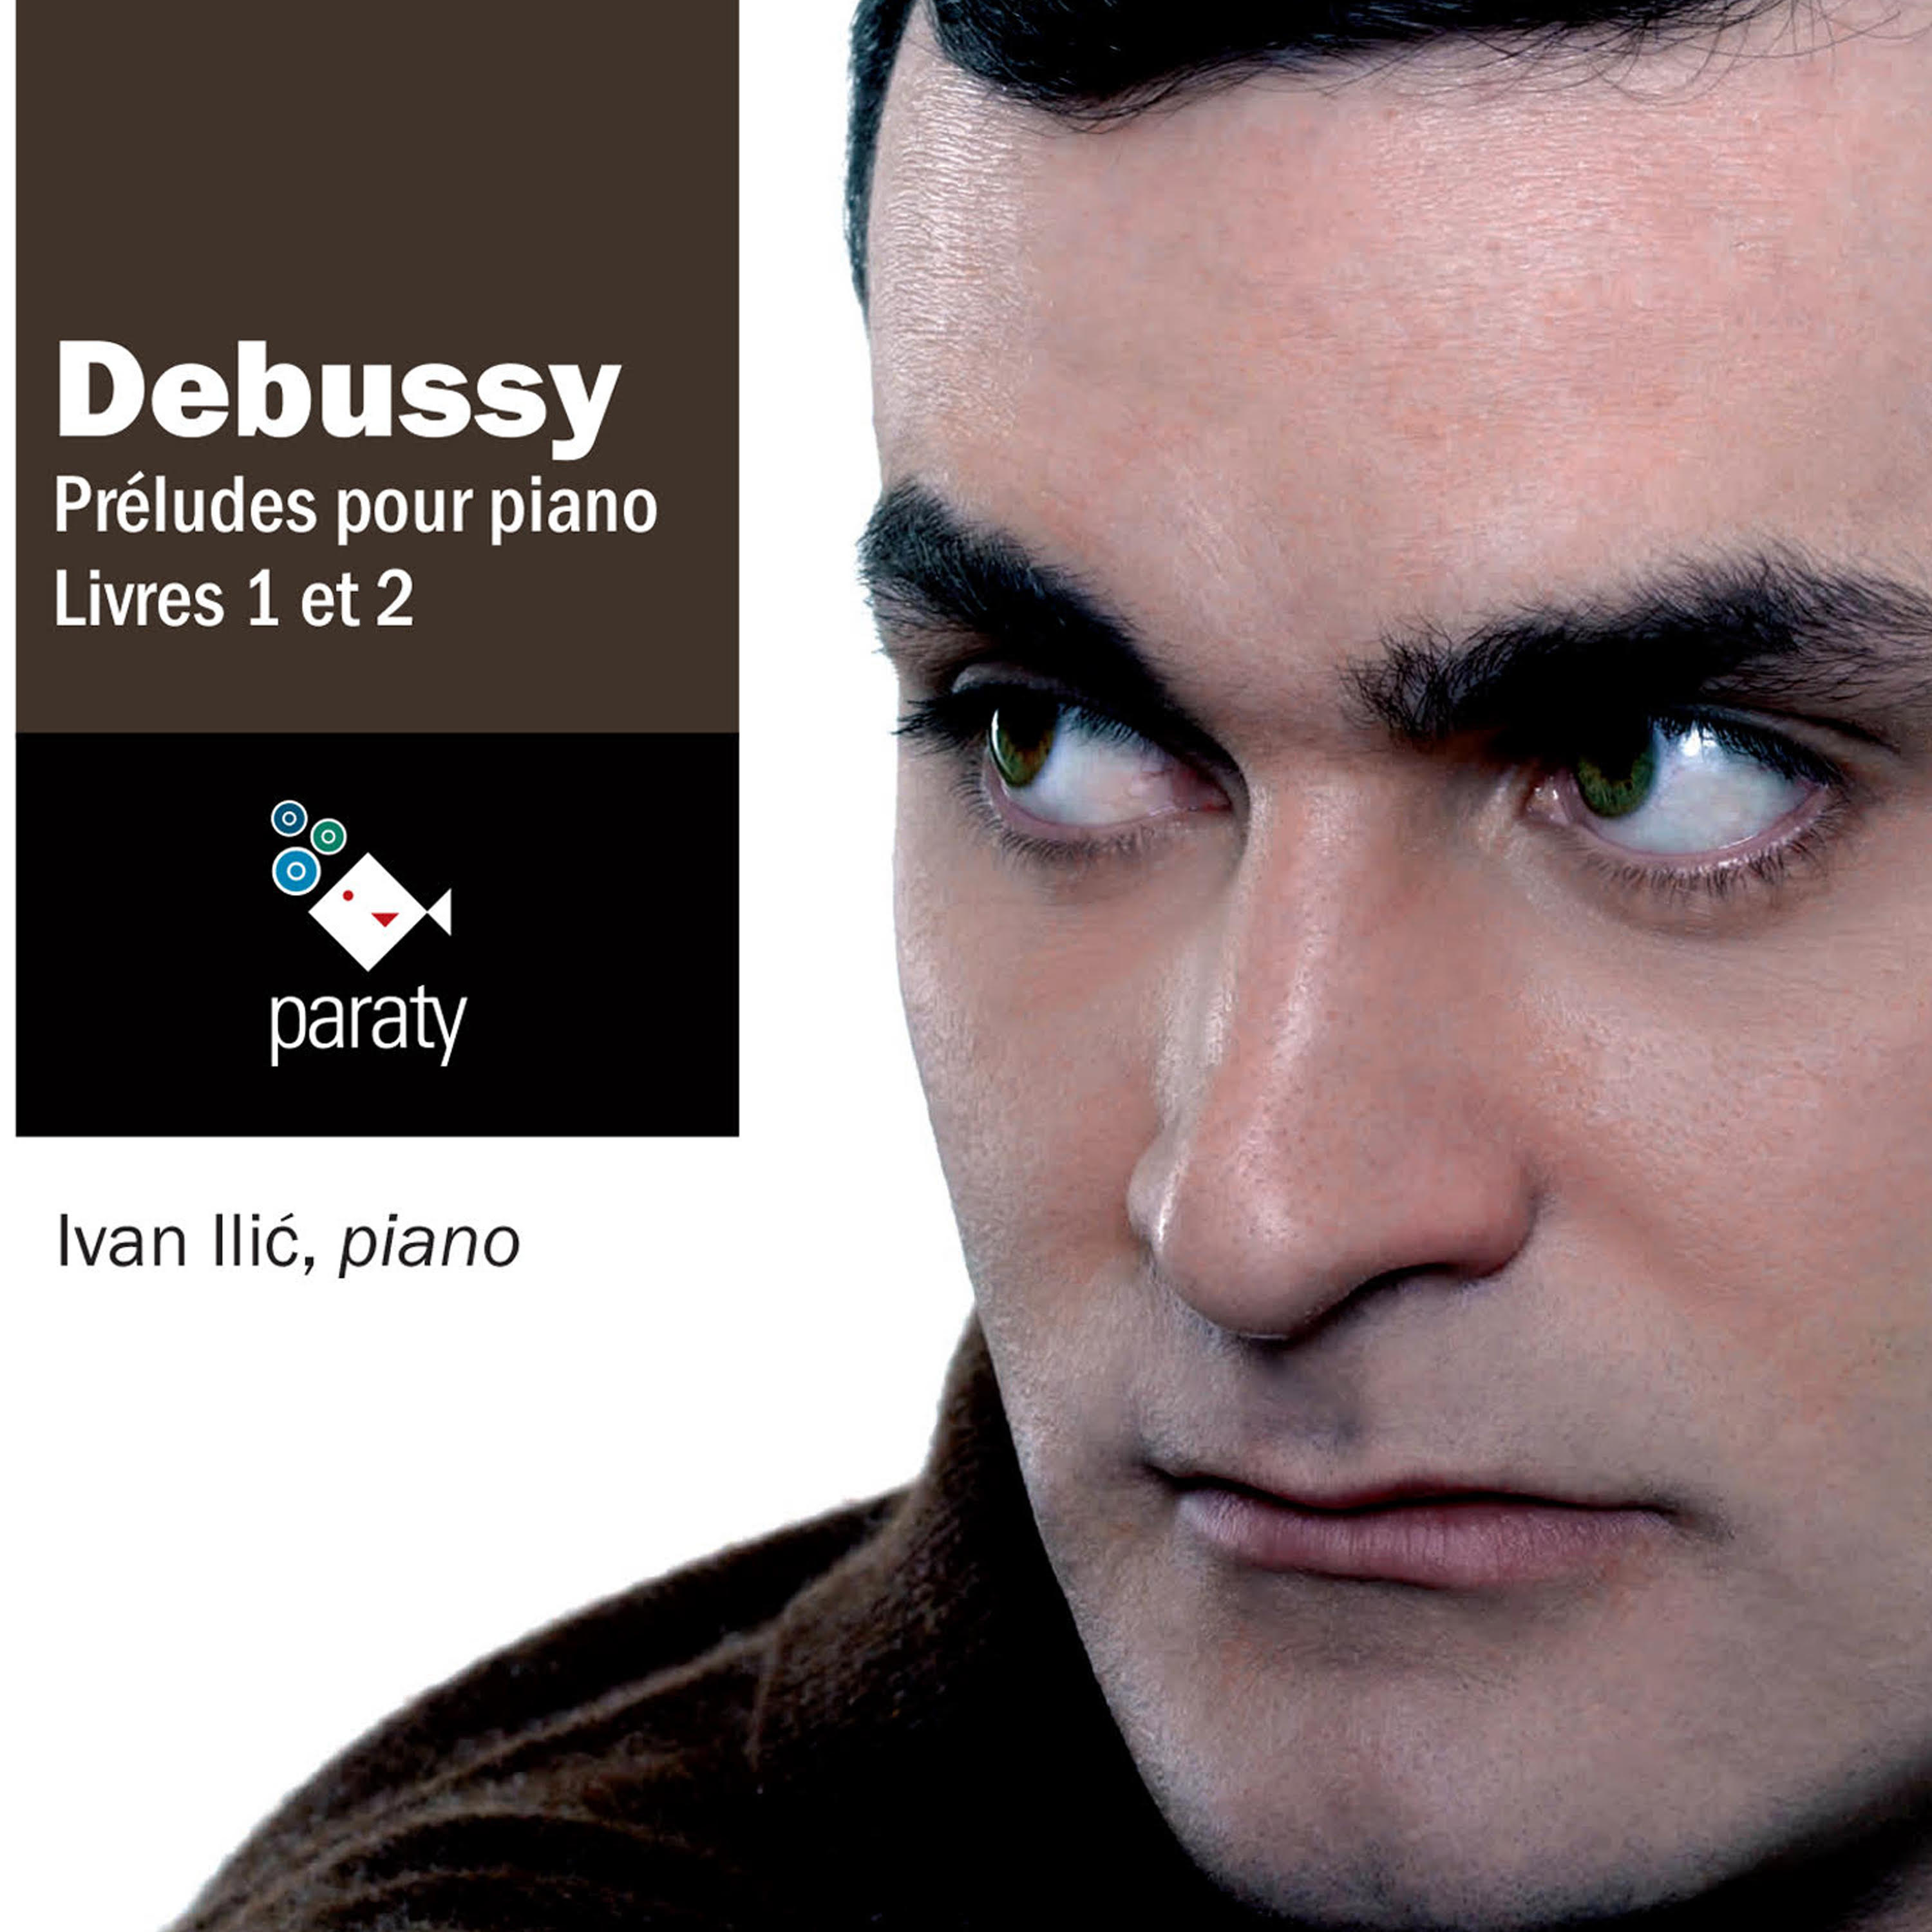 Debussy – Préludes pour piano Livres 1 et 2